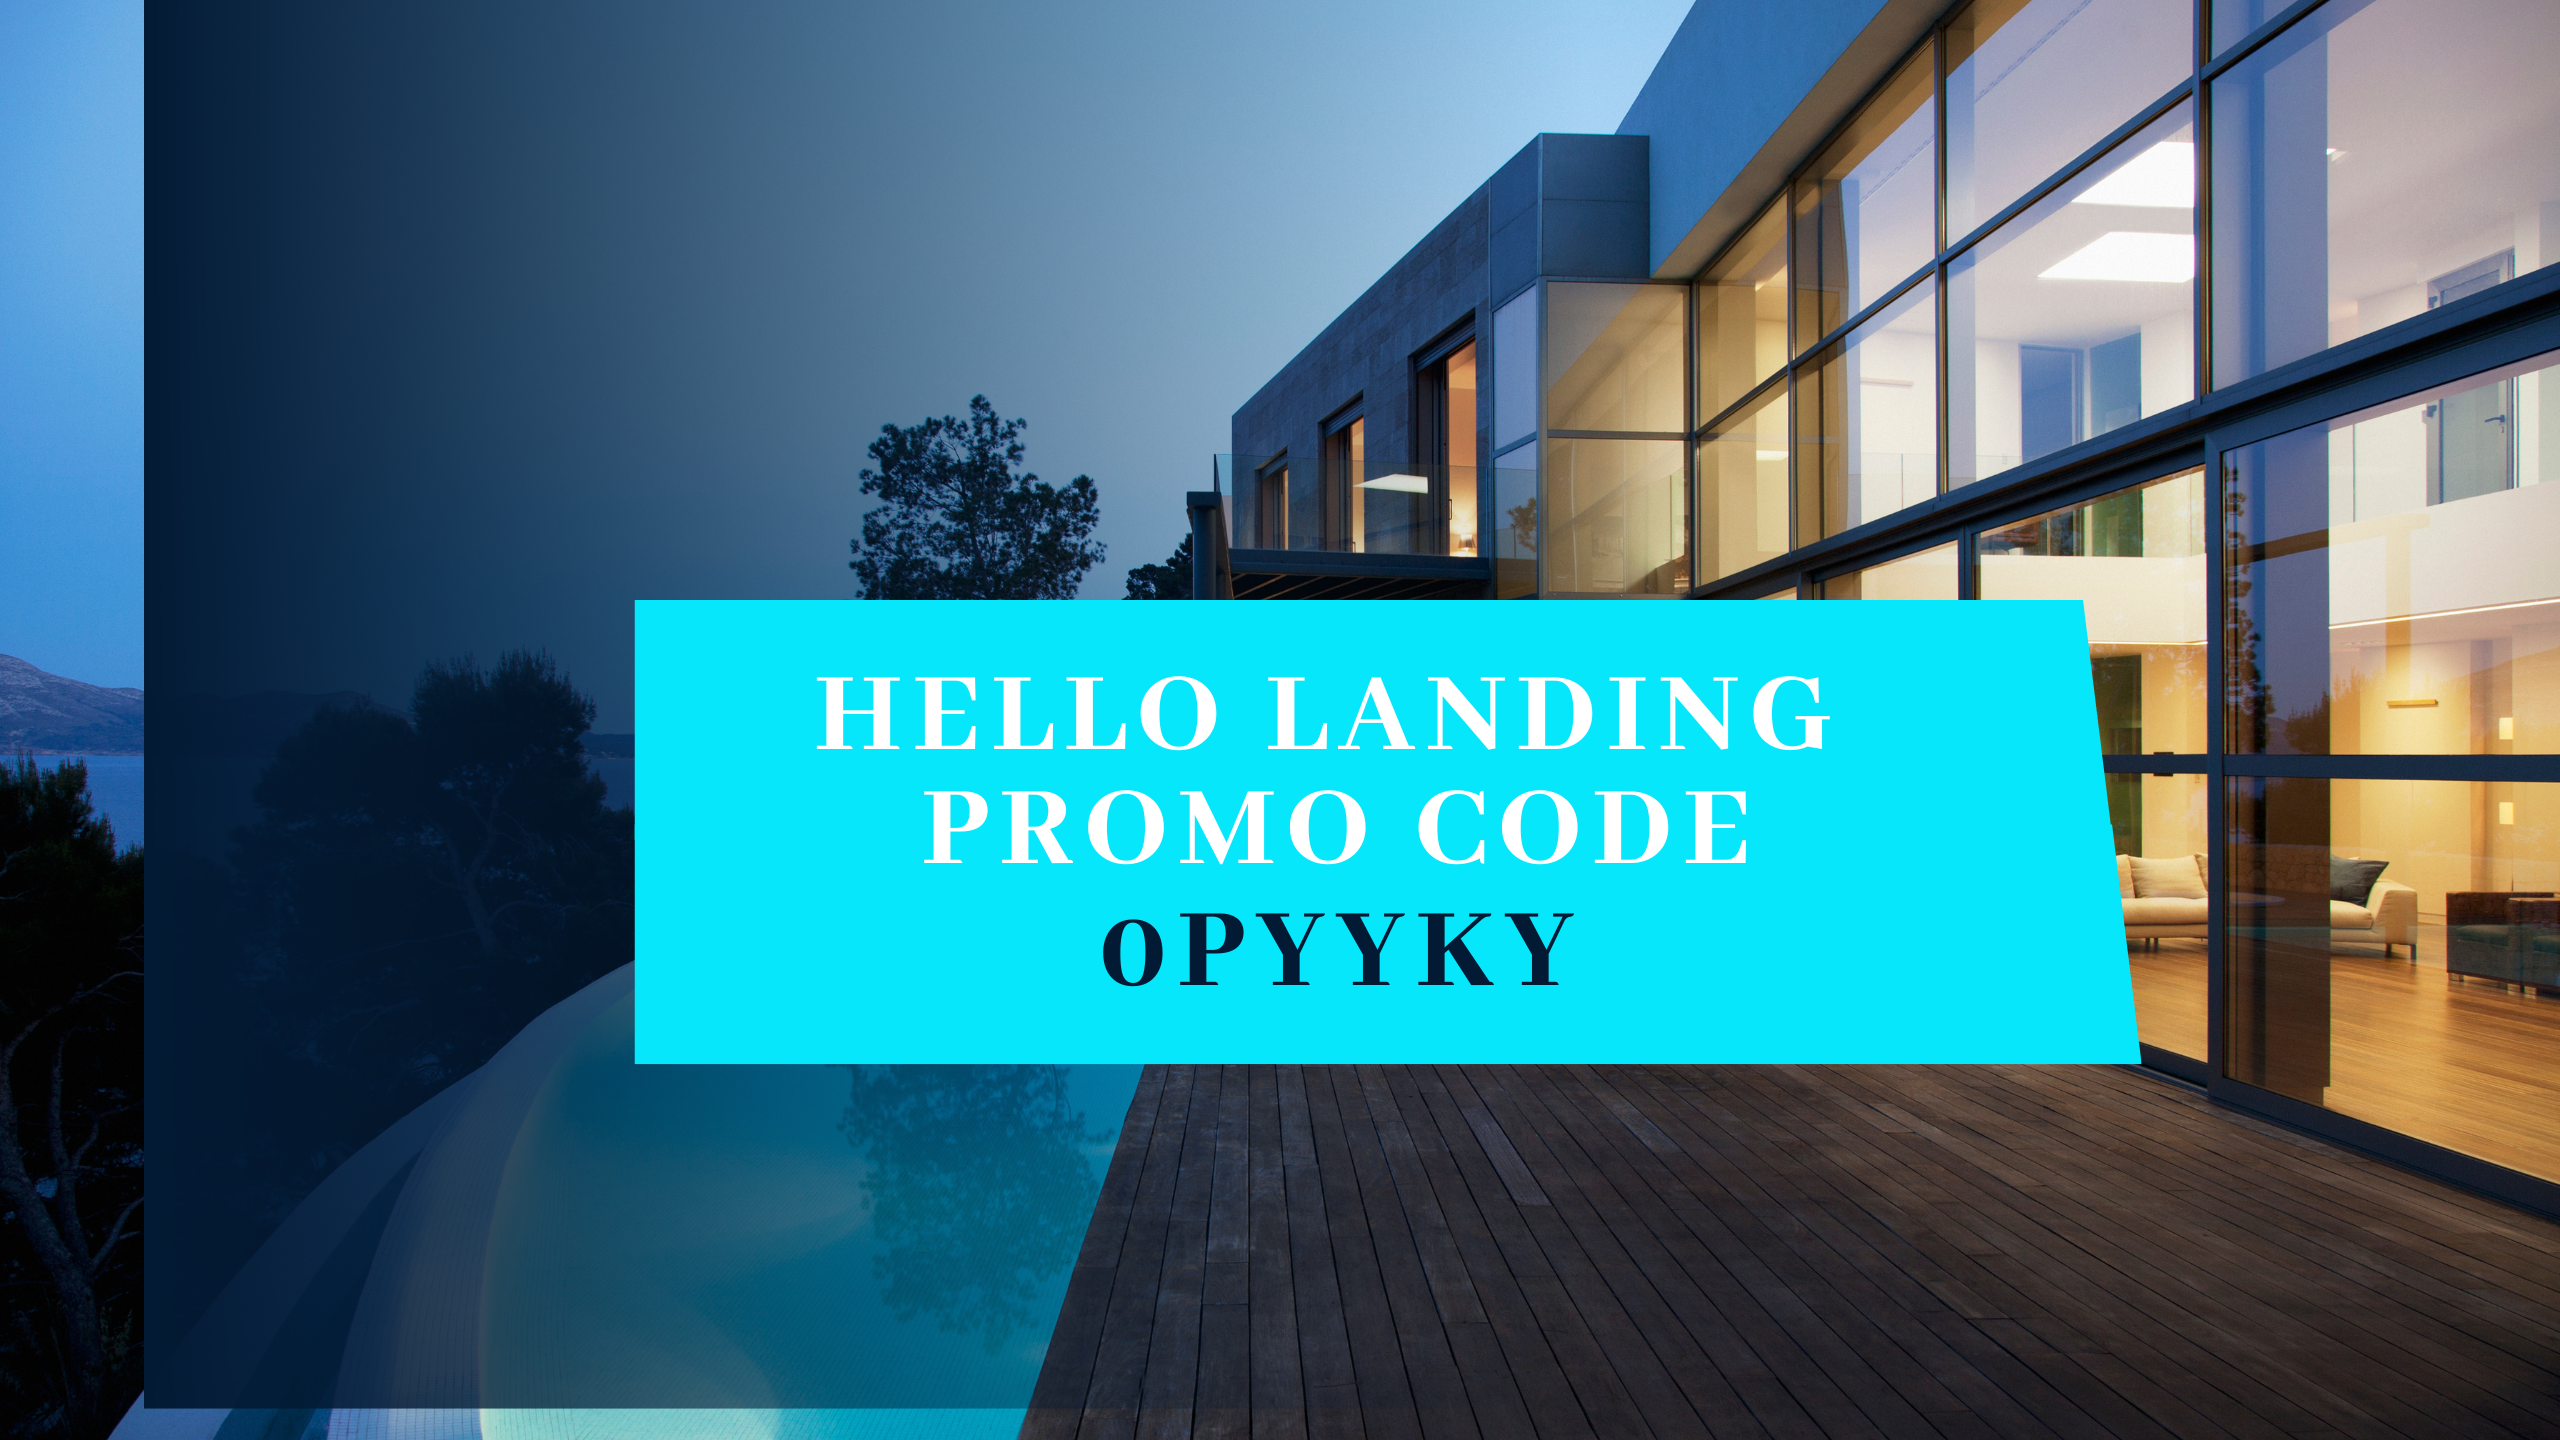 Hello Landing Promo Code: 0Pyyky